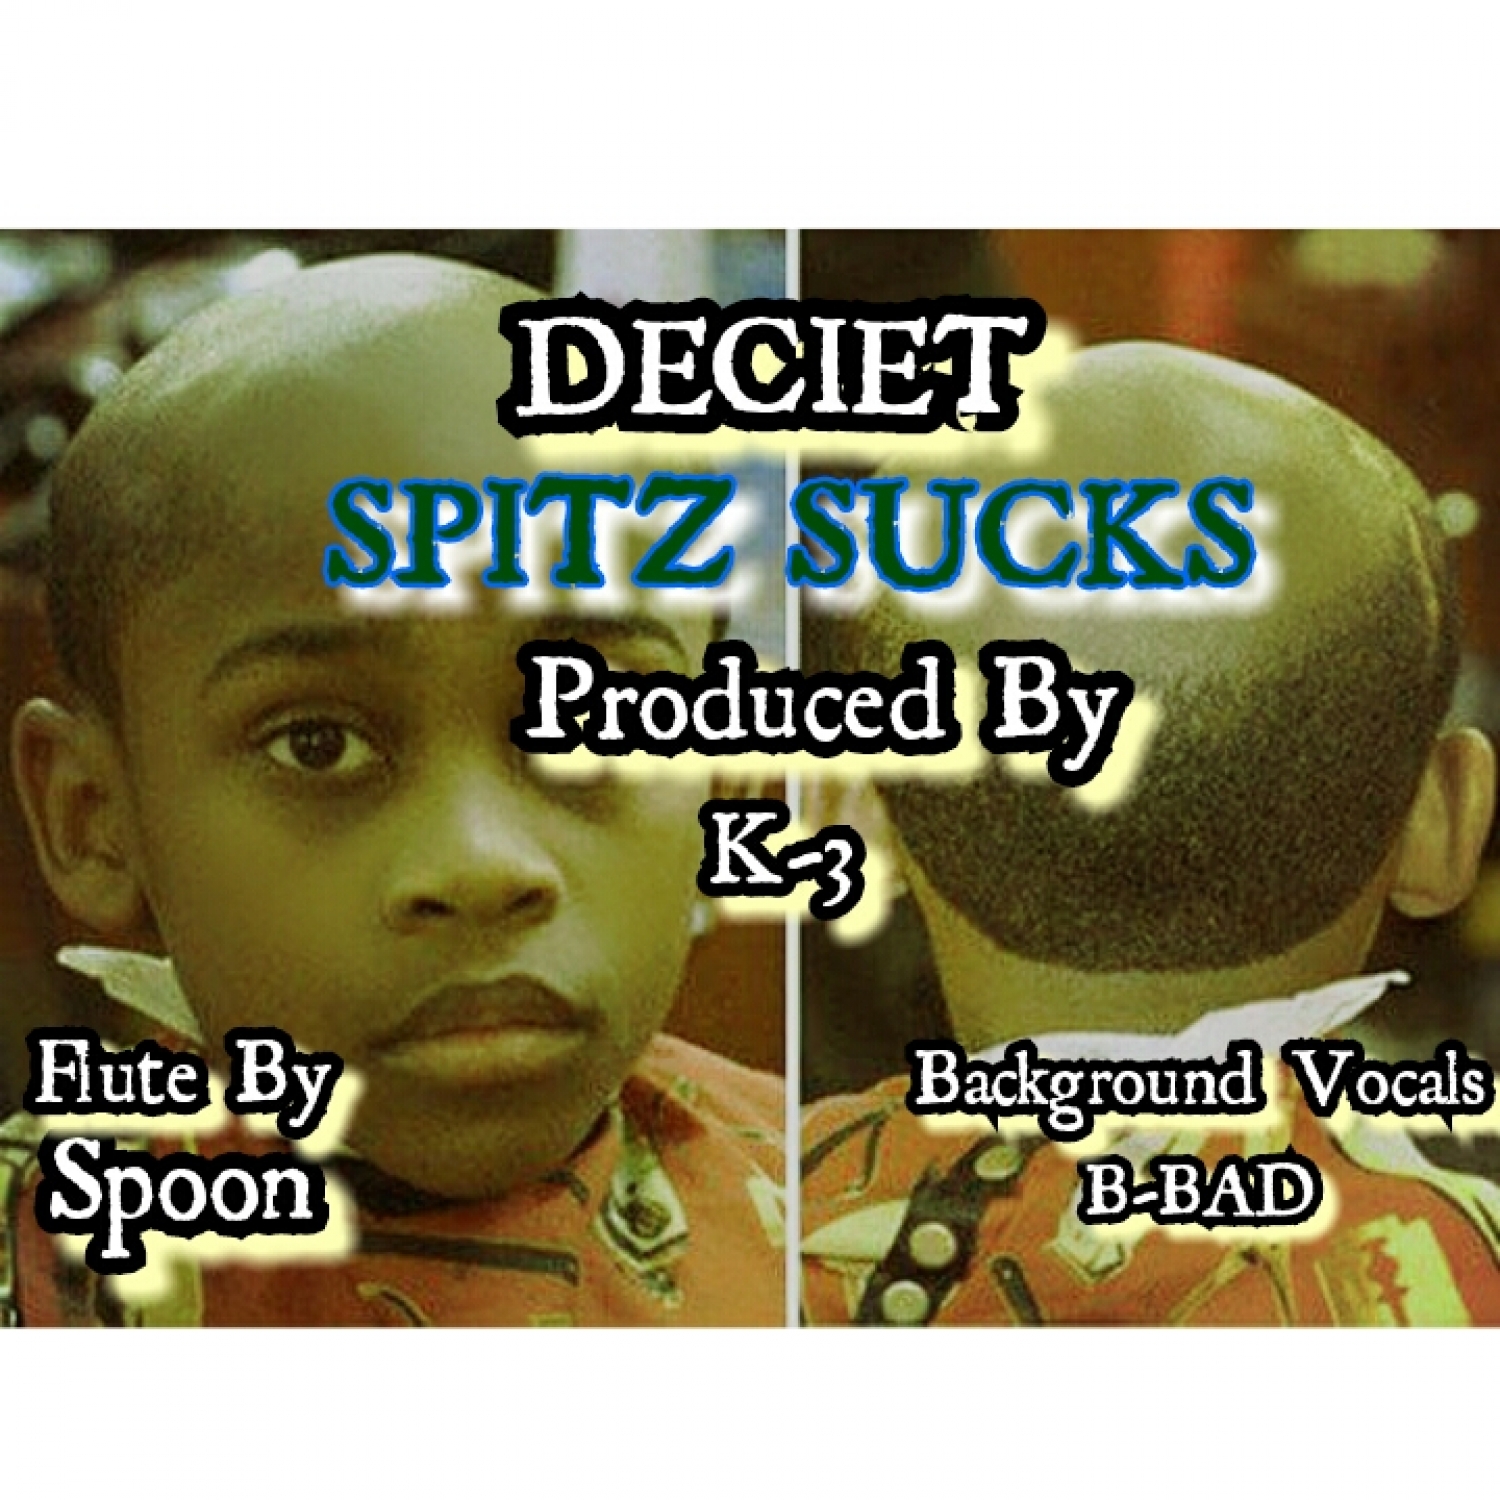 Spitz Sucks